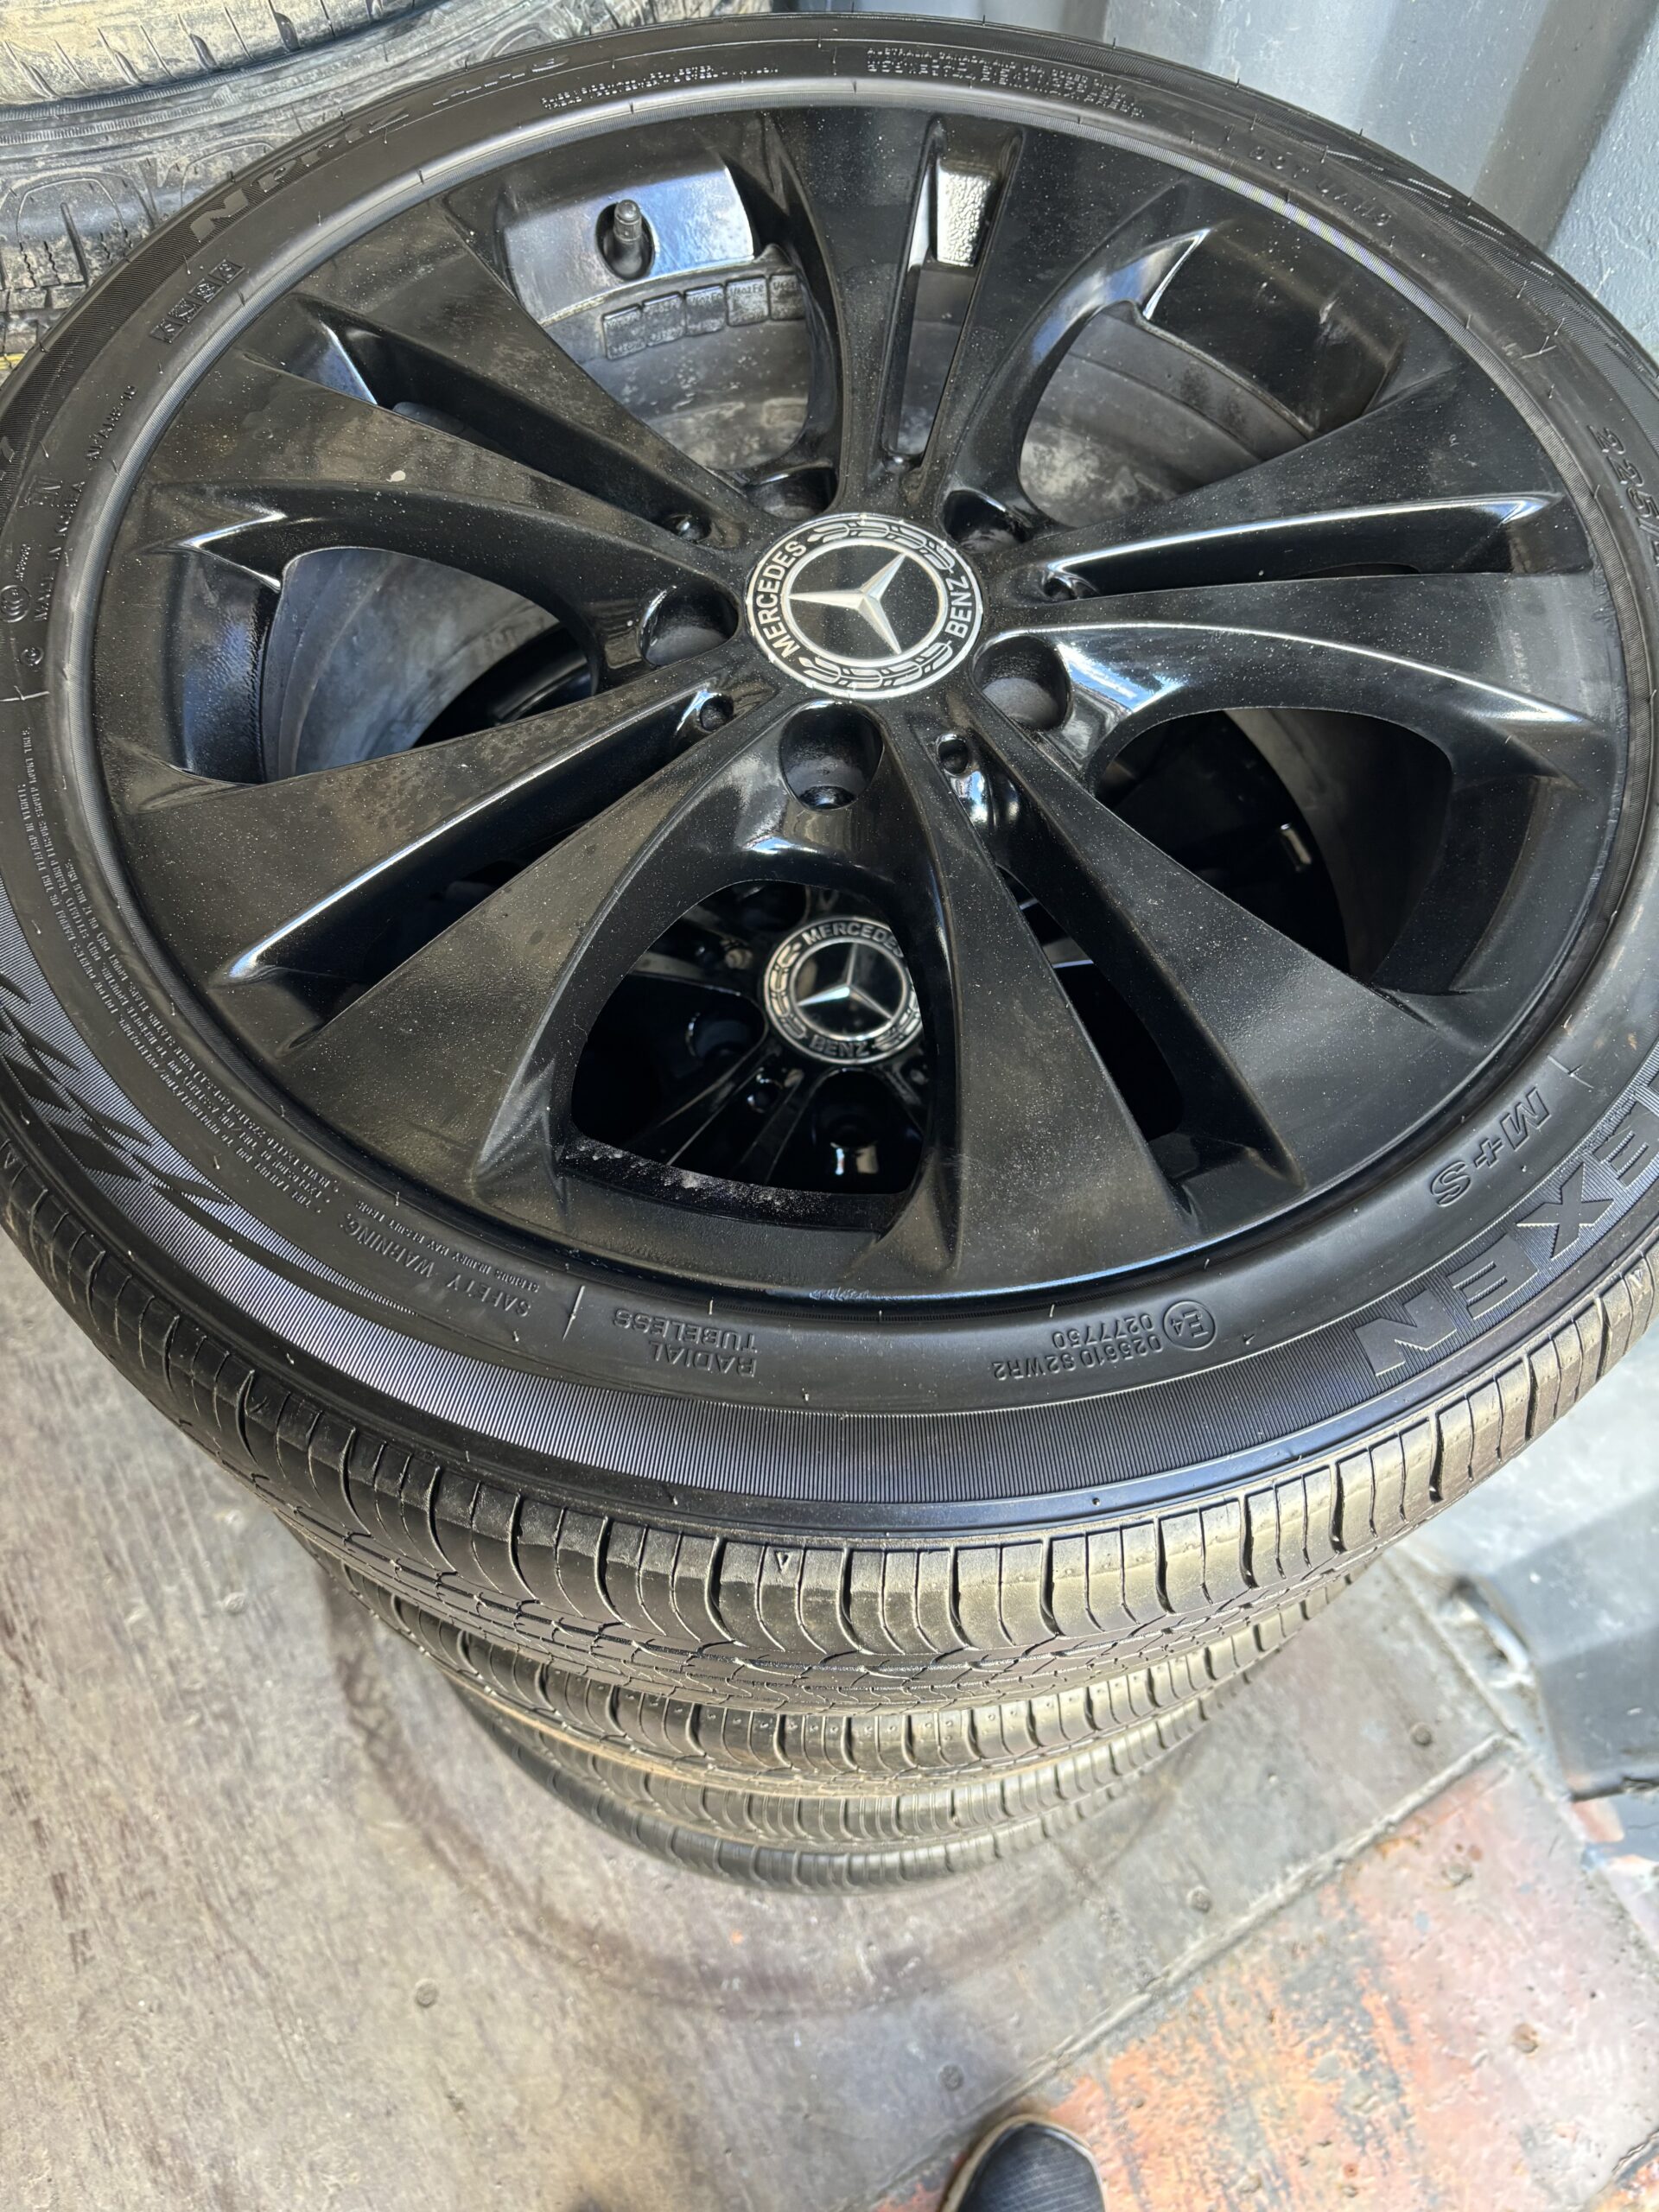 225/45r18 nexen tires on Benz rims